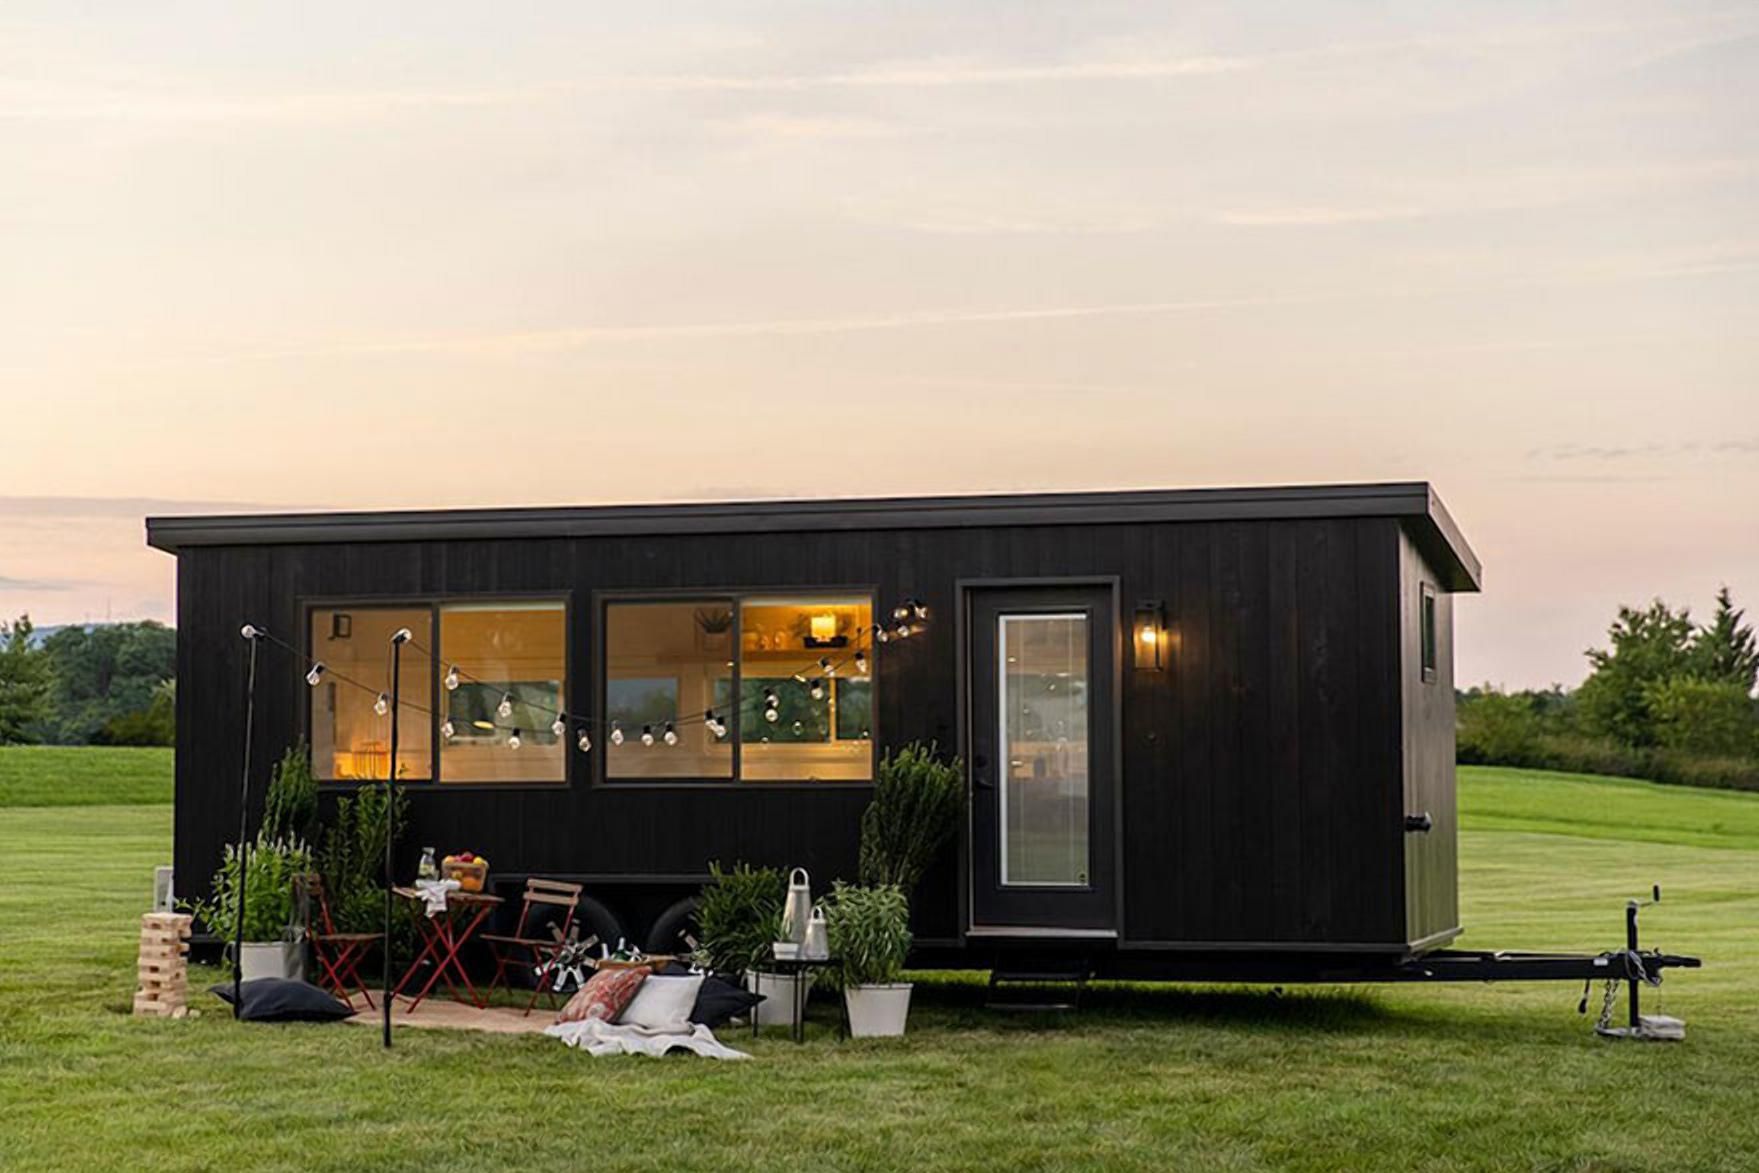 Мини-хюґе: как выглядит компактный и уютный мобильный домик от IKEA